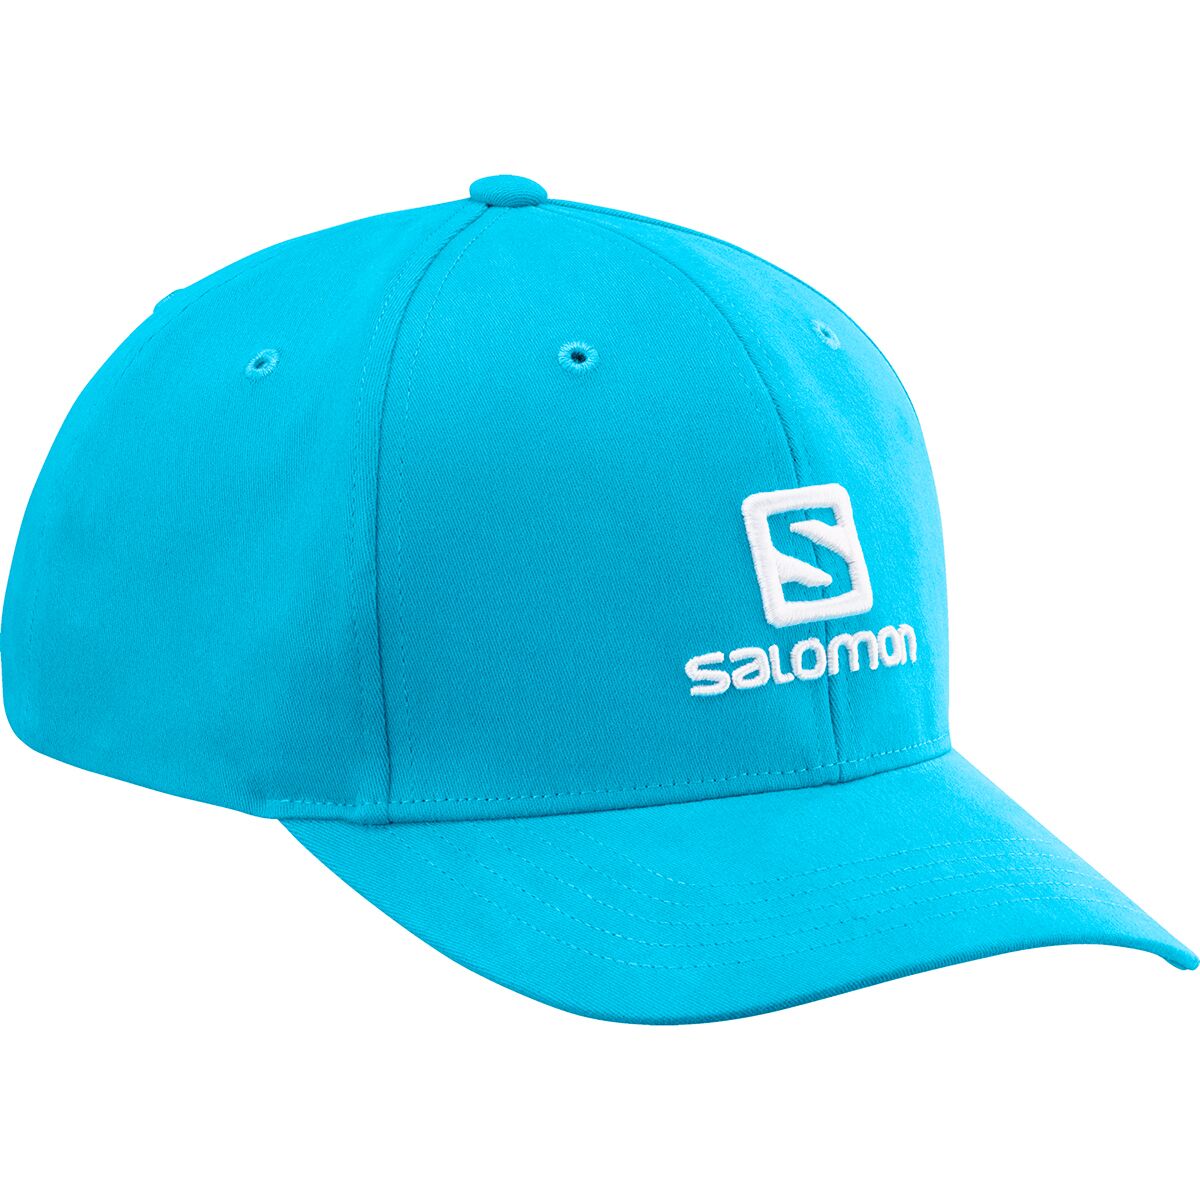 Salomon Logo Cap - Accessories